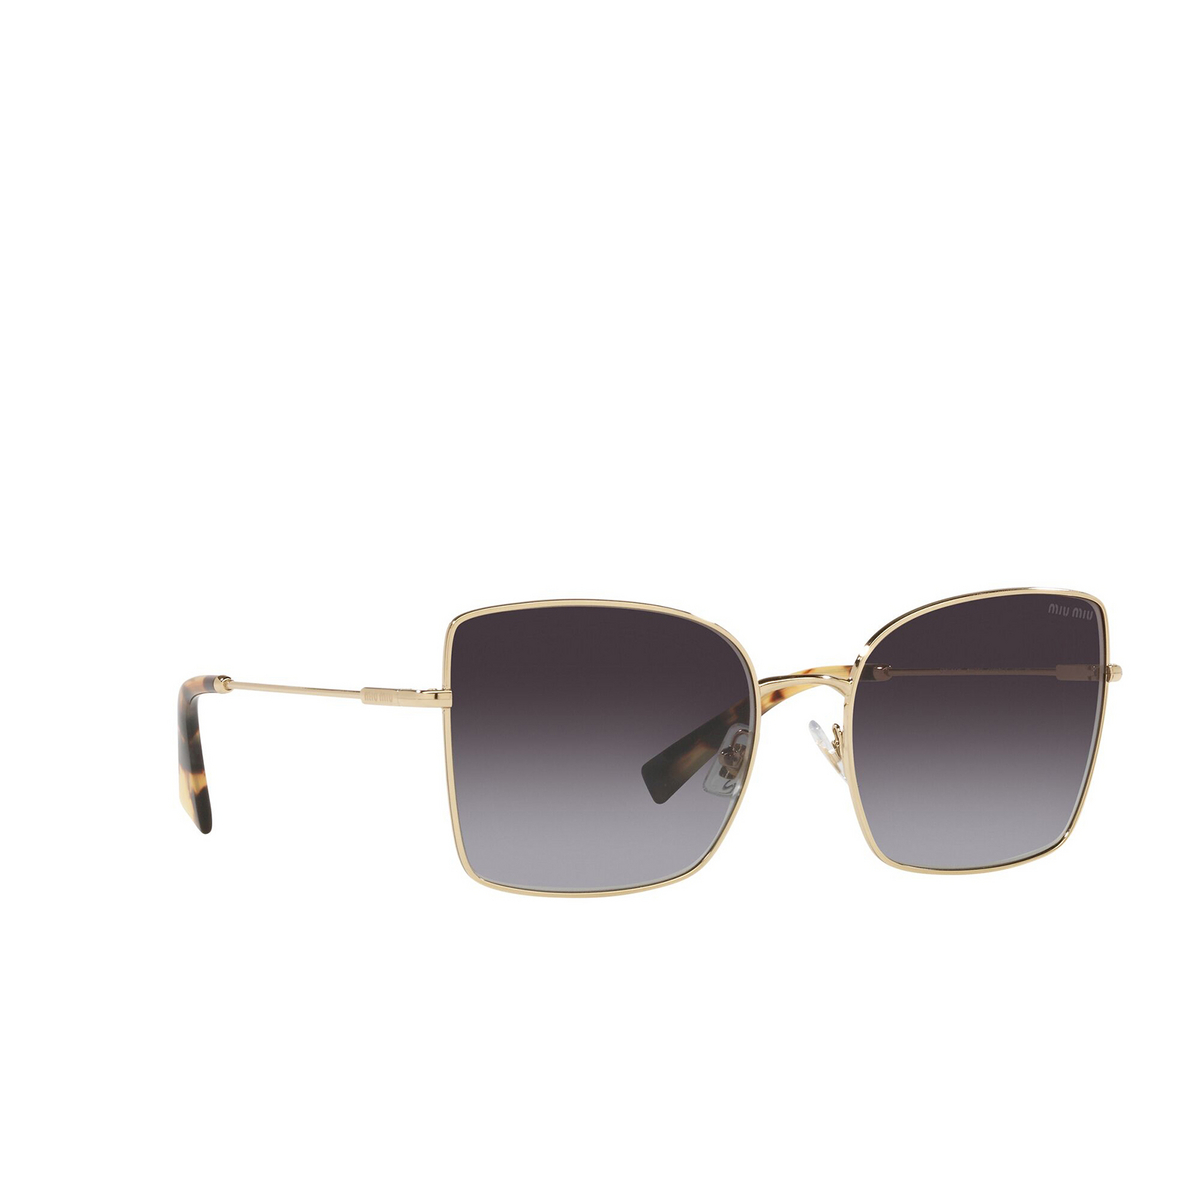 Miu Miu® Butterfly Sunglasses: MU 51WS color Pale Gold ZVN5D1 - three-quarters view.